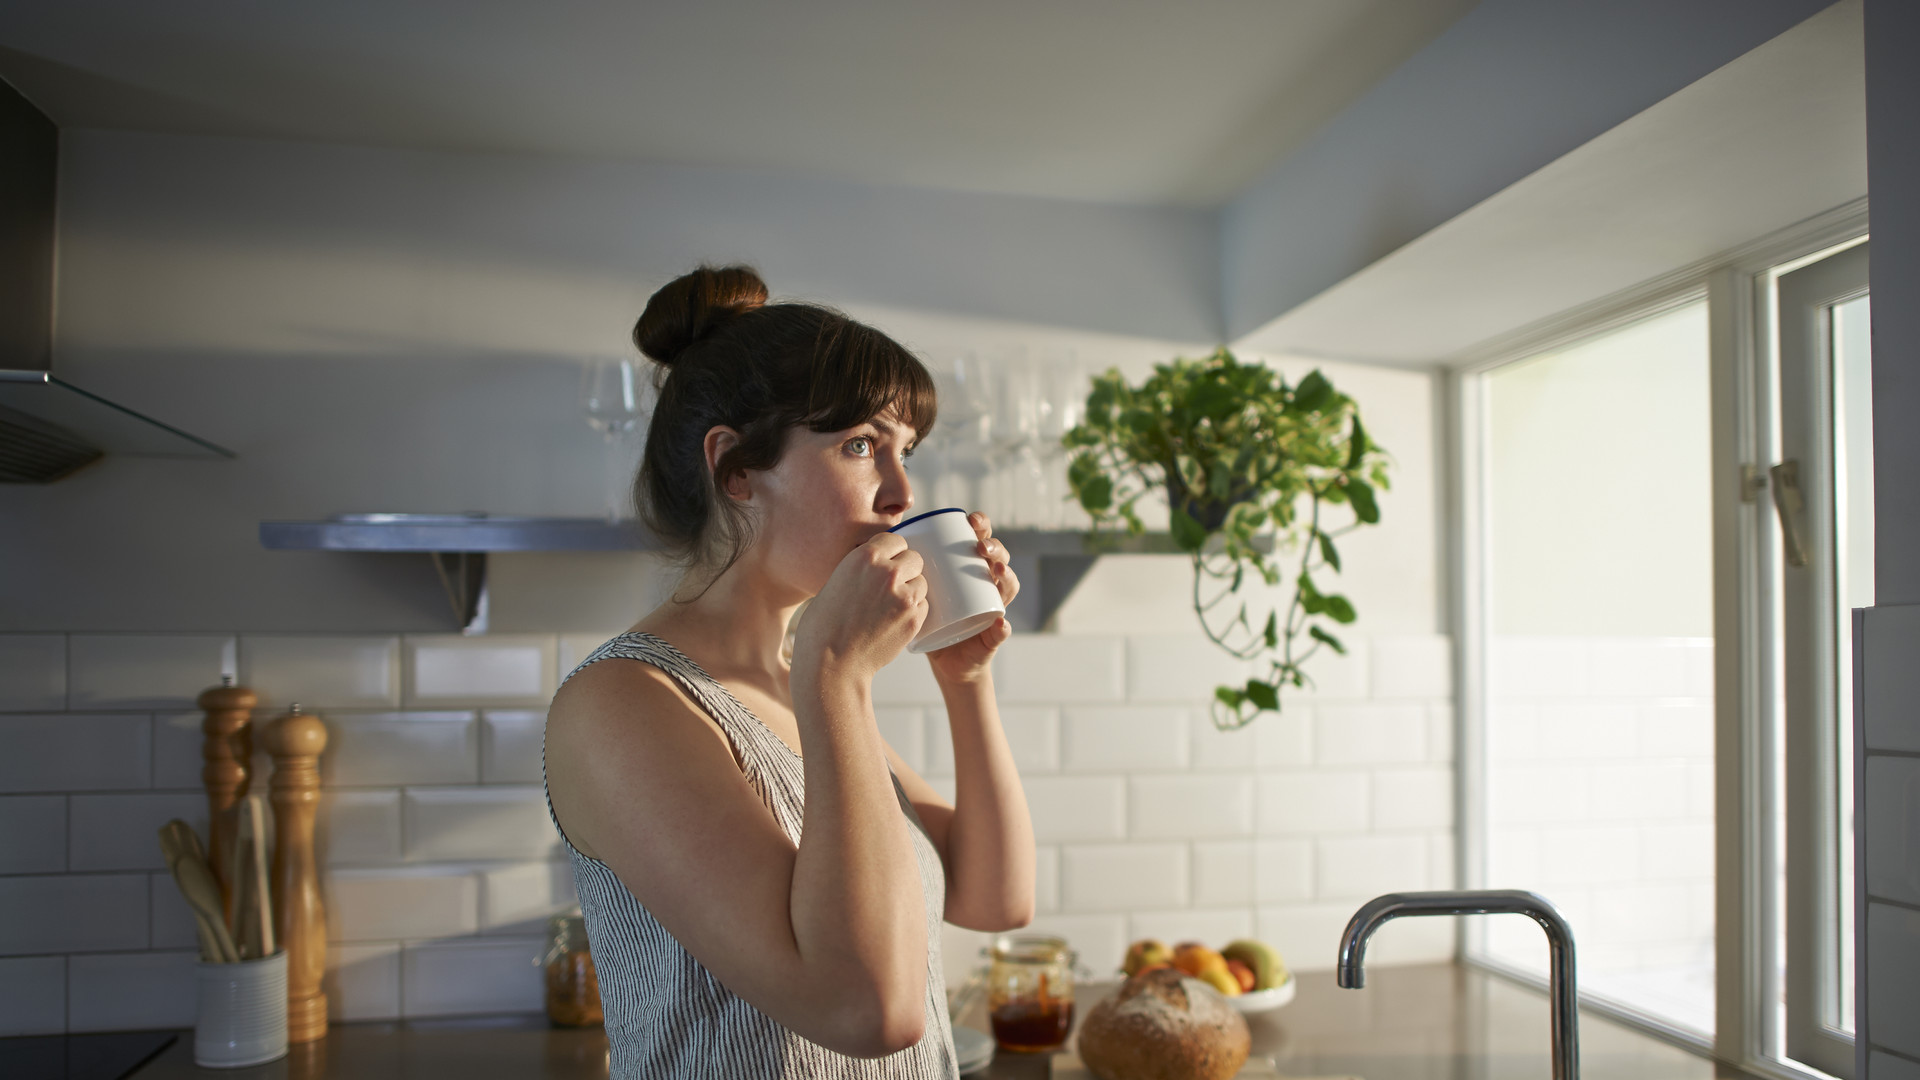 Woman drinking from mug in zero waste kitchen.